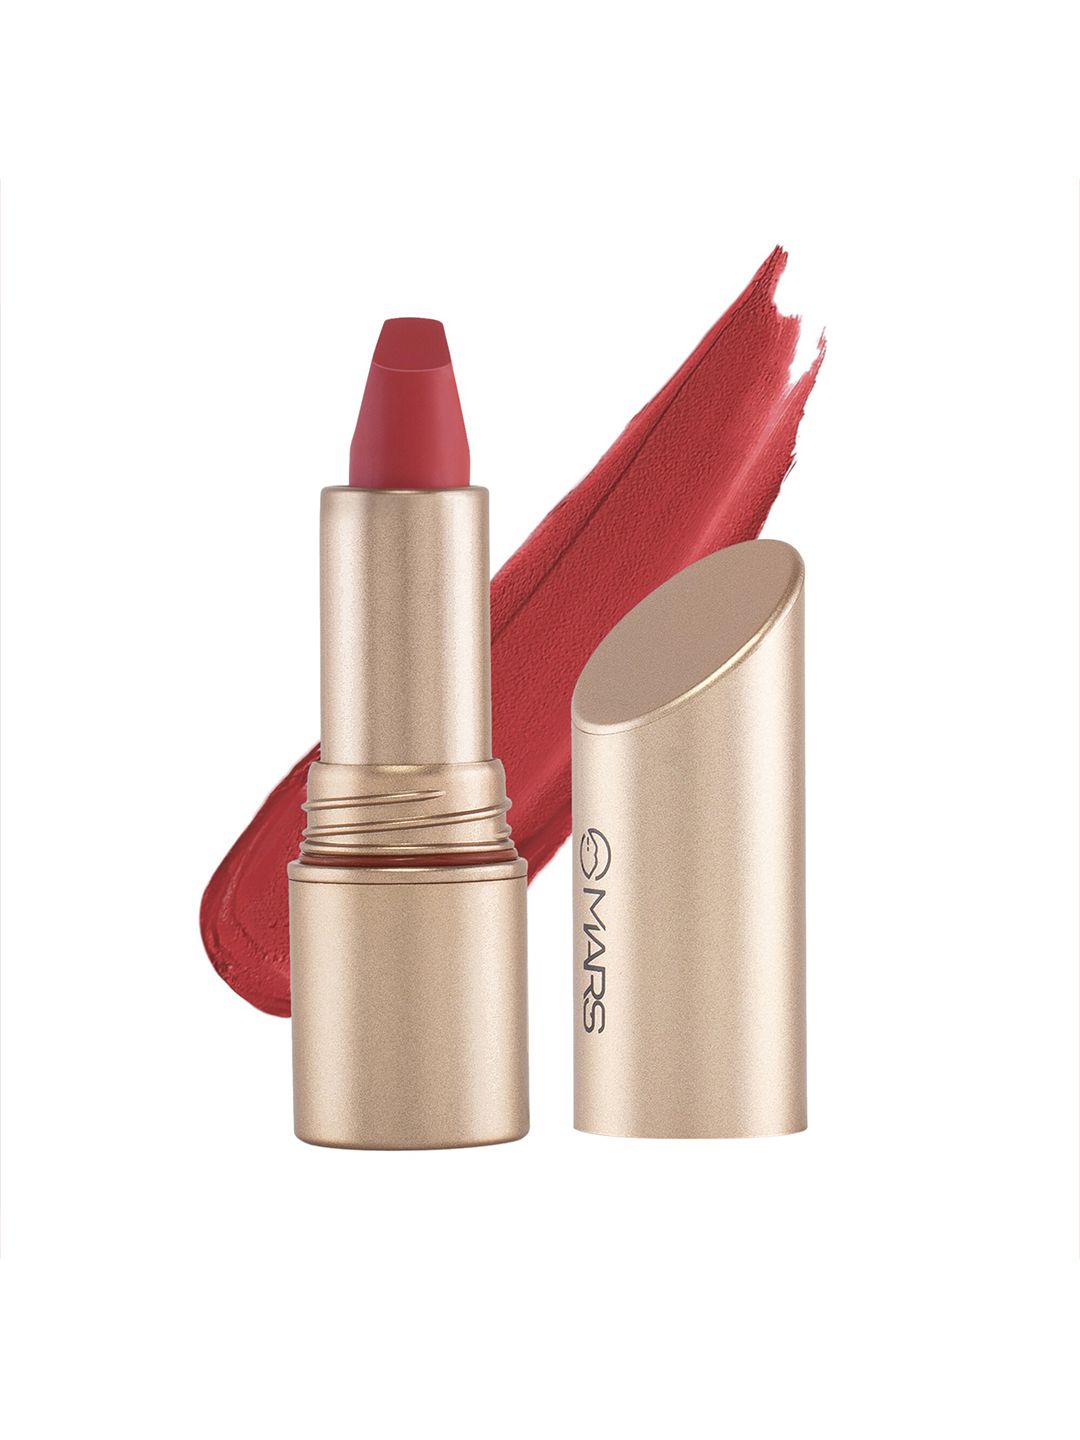 MARS Matinee Non-Transfer Non-Smudge Lipstick -  Serene Scarlet 09 Price in India